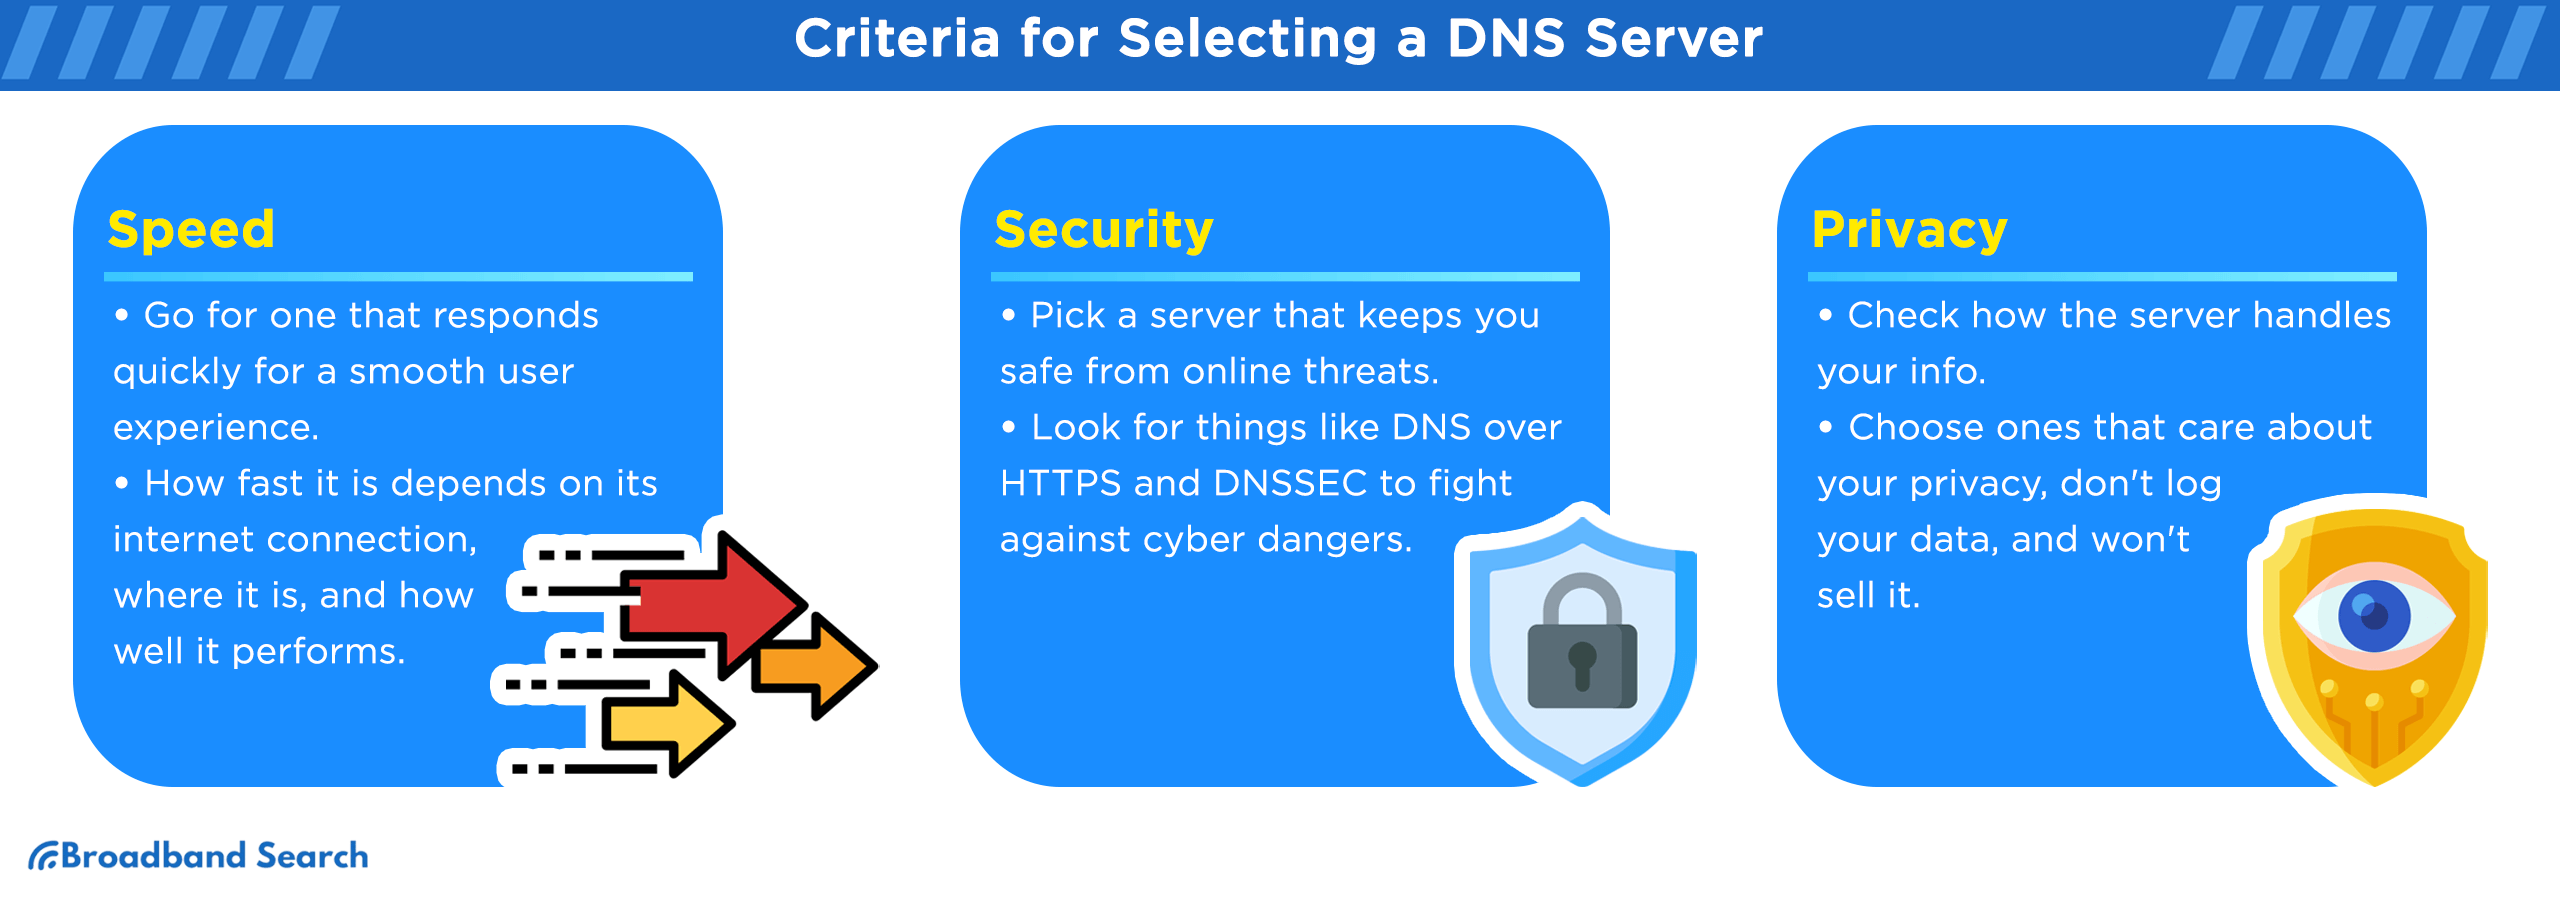 Criteria for selecting a DNS Server